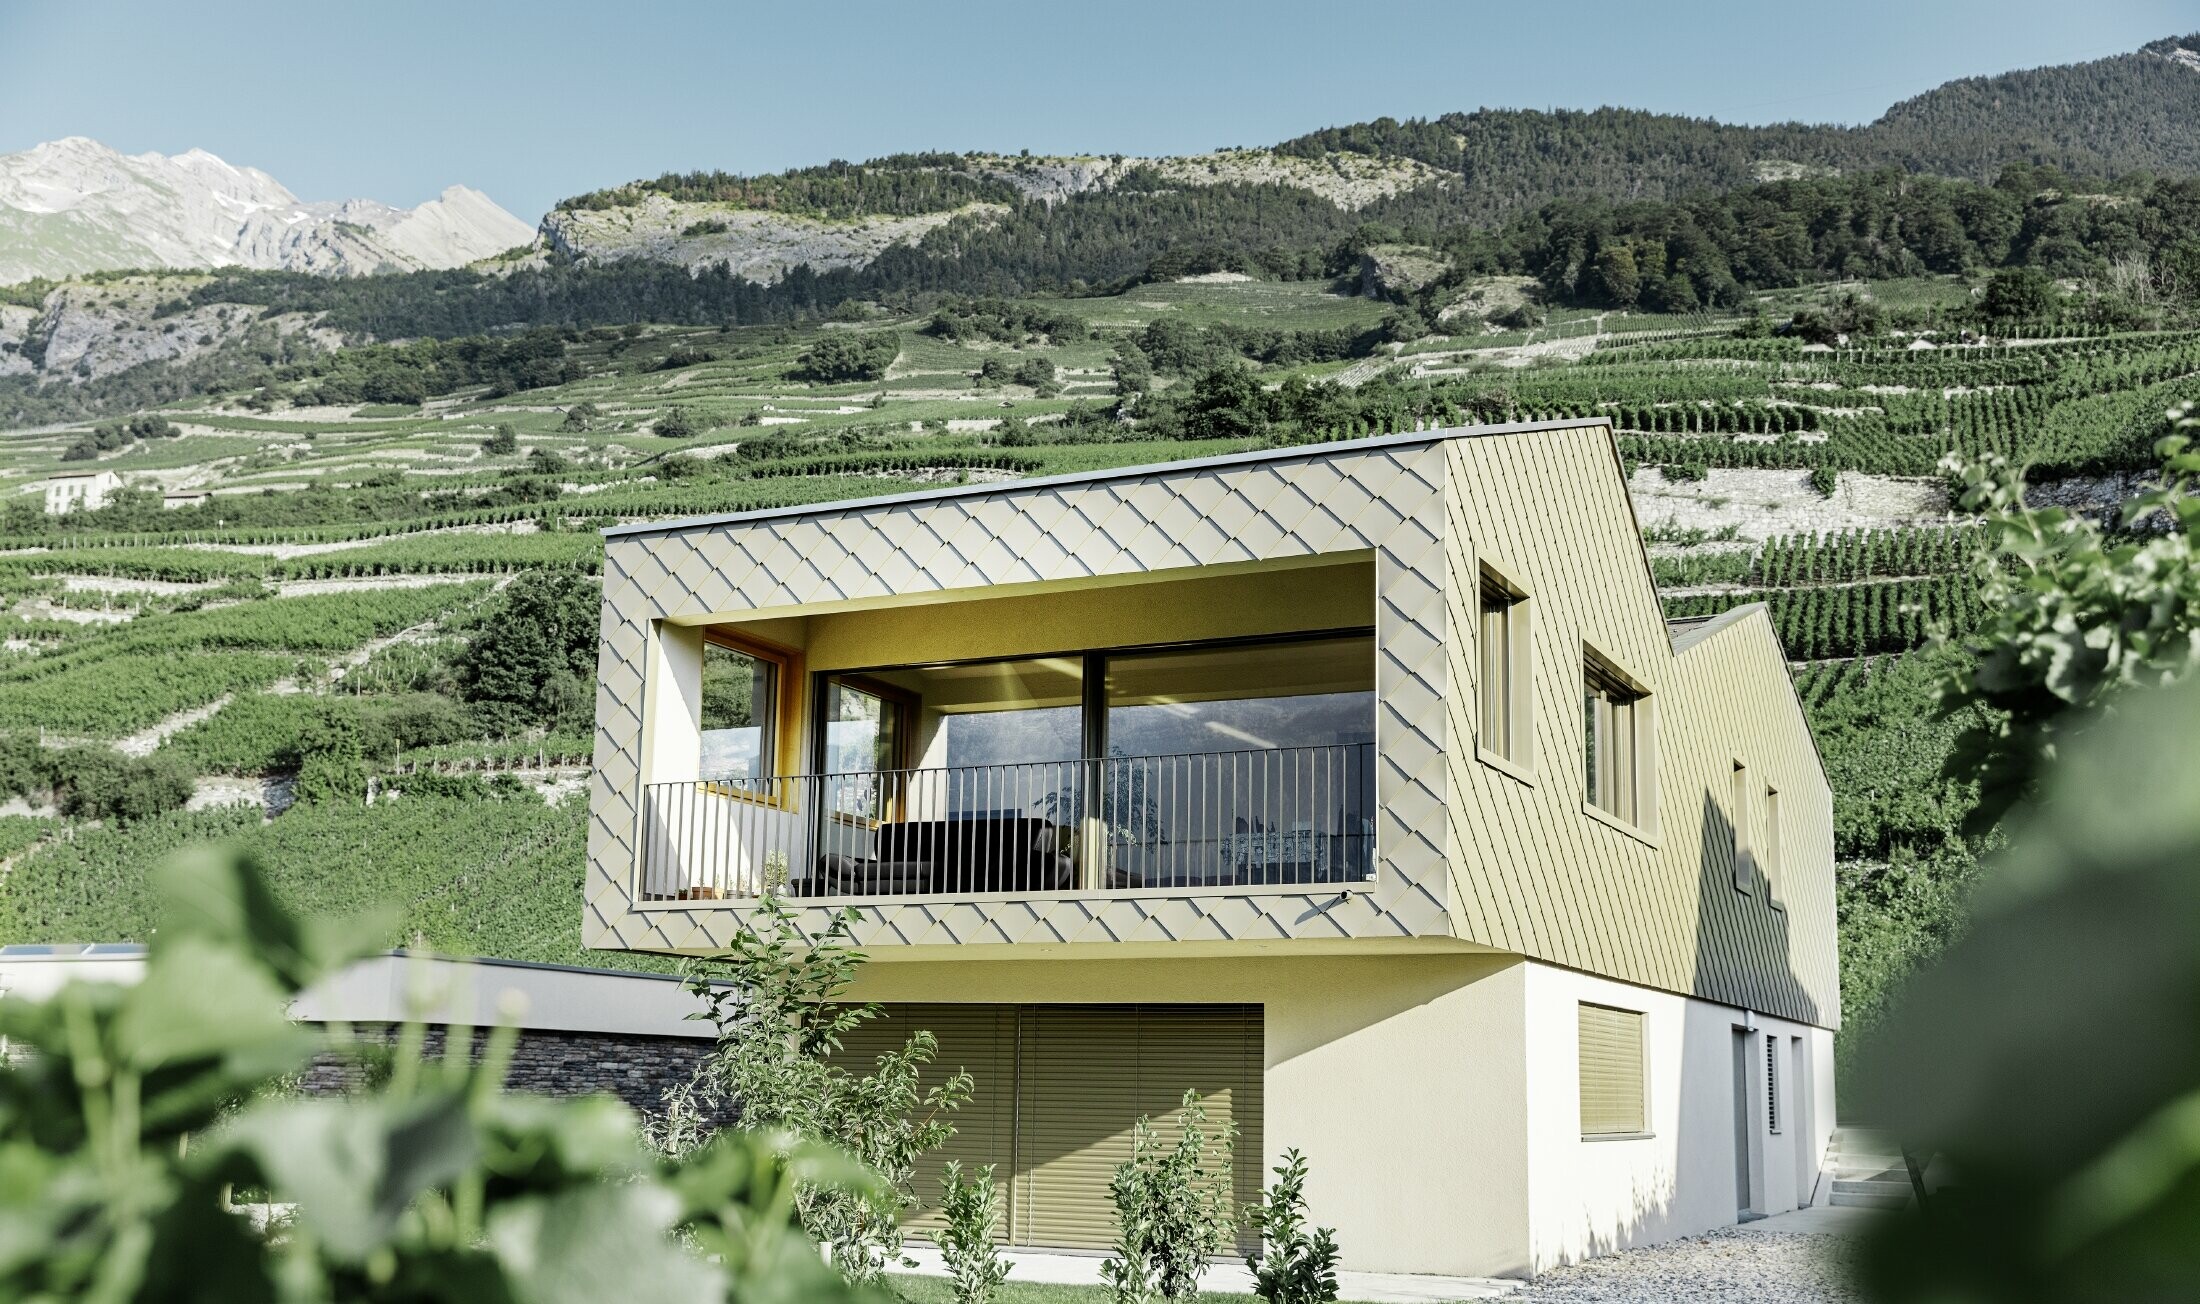 Casa unifamiliare moderna in mezzo ai vigneti della valle Rhône con 4 superfici di copertura differenti e un attico con una facciata in scaglia in bronzo